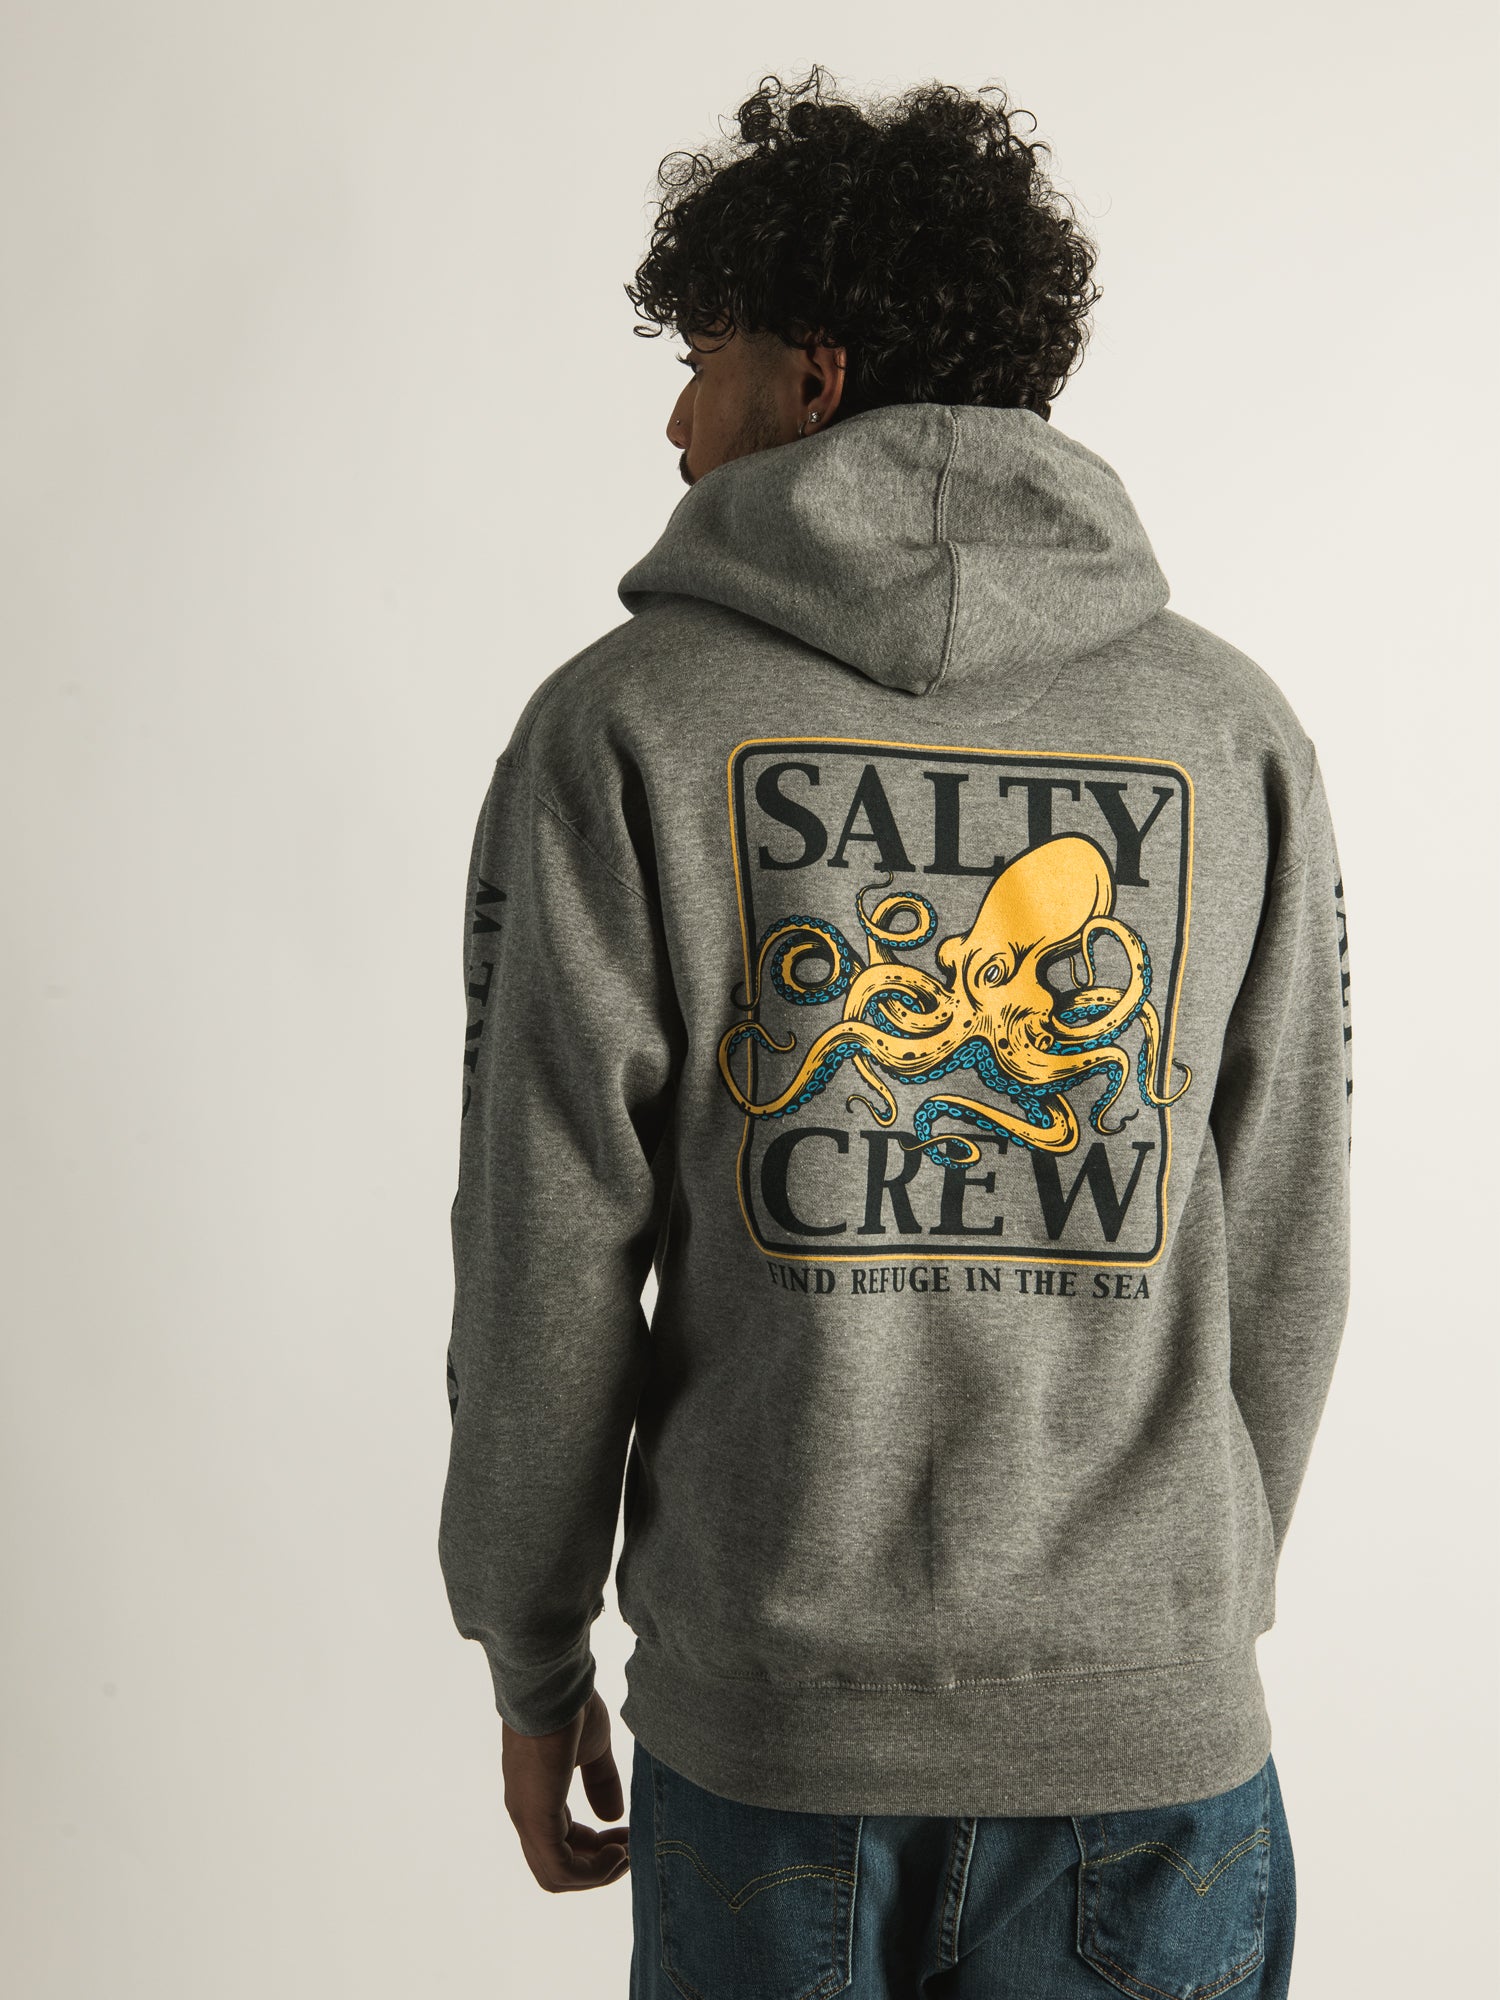 Salty Crew Hoodie Mens S Small Green Standard Hooded Sweatshirt Fishing Lure